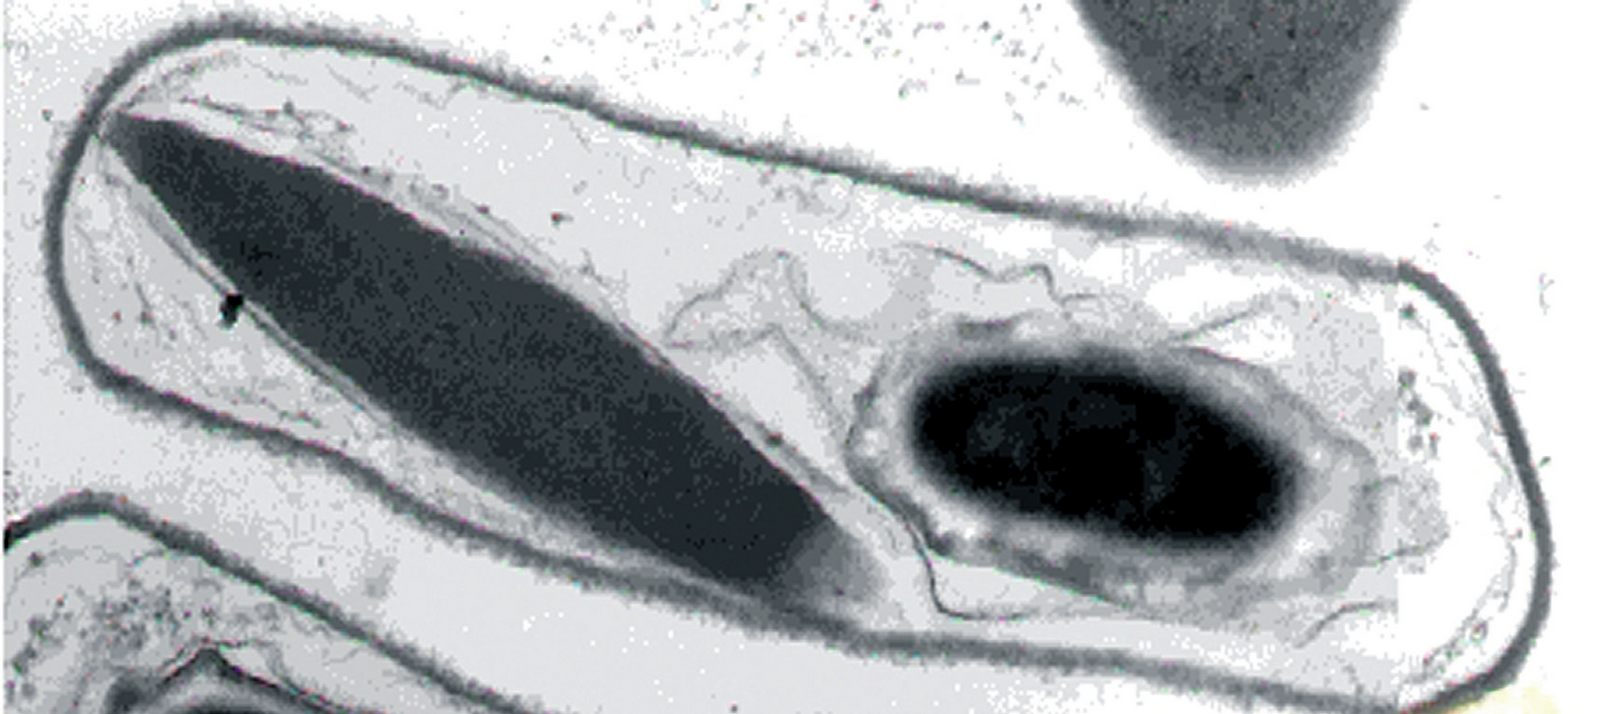 Microfotografía de Bacillus thuringiensis en microscopio electrónico de transmisión